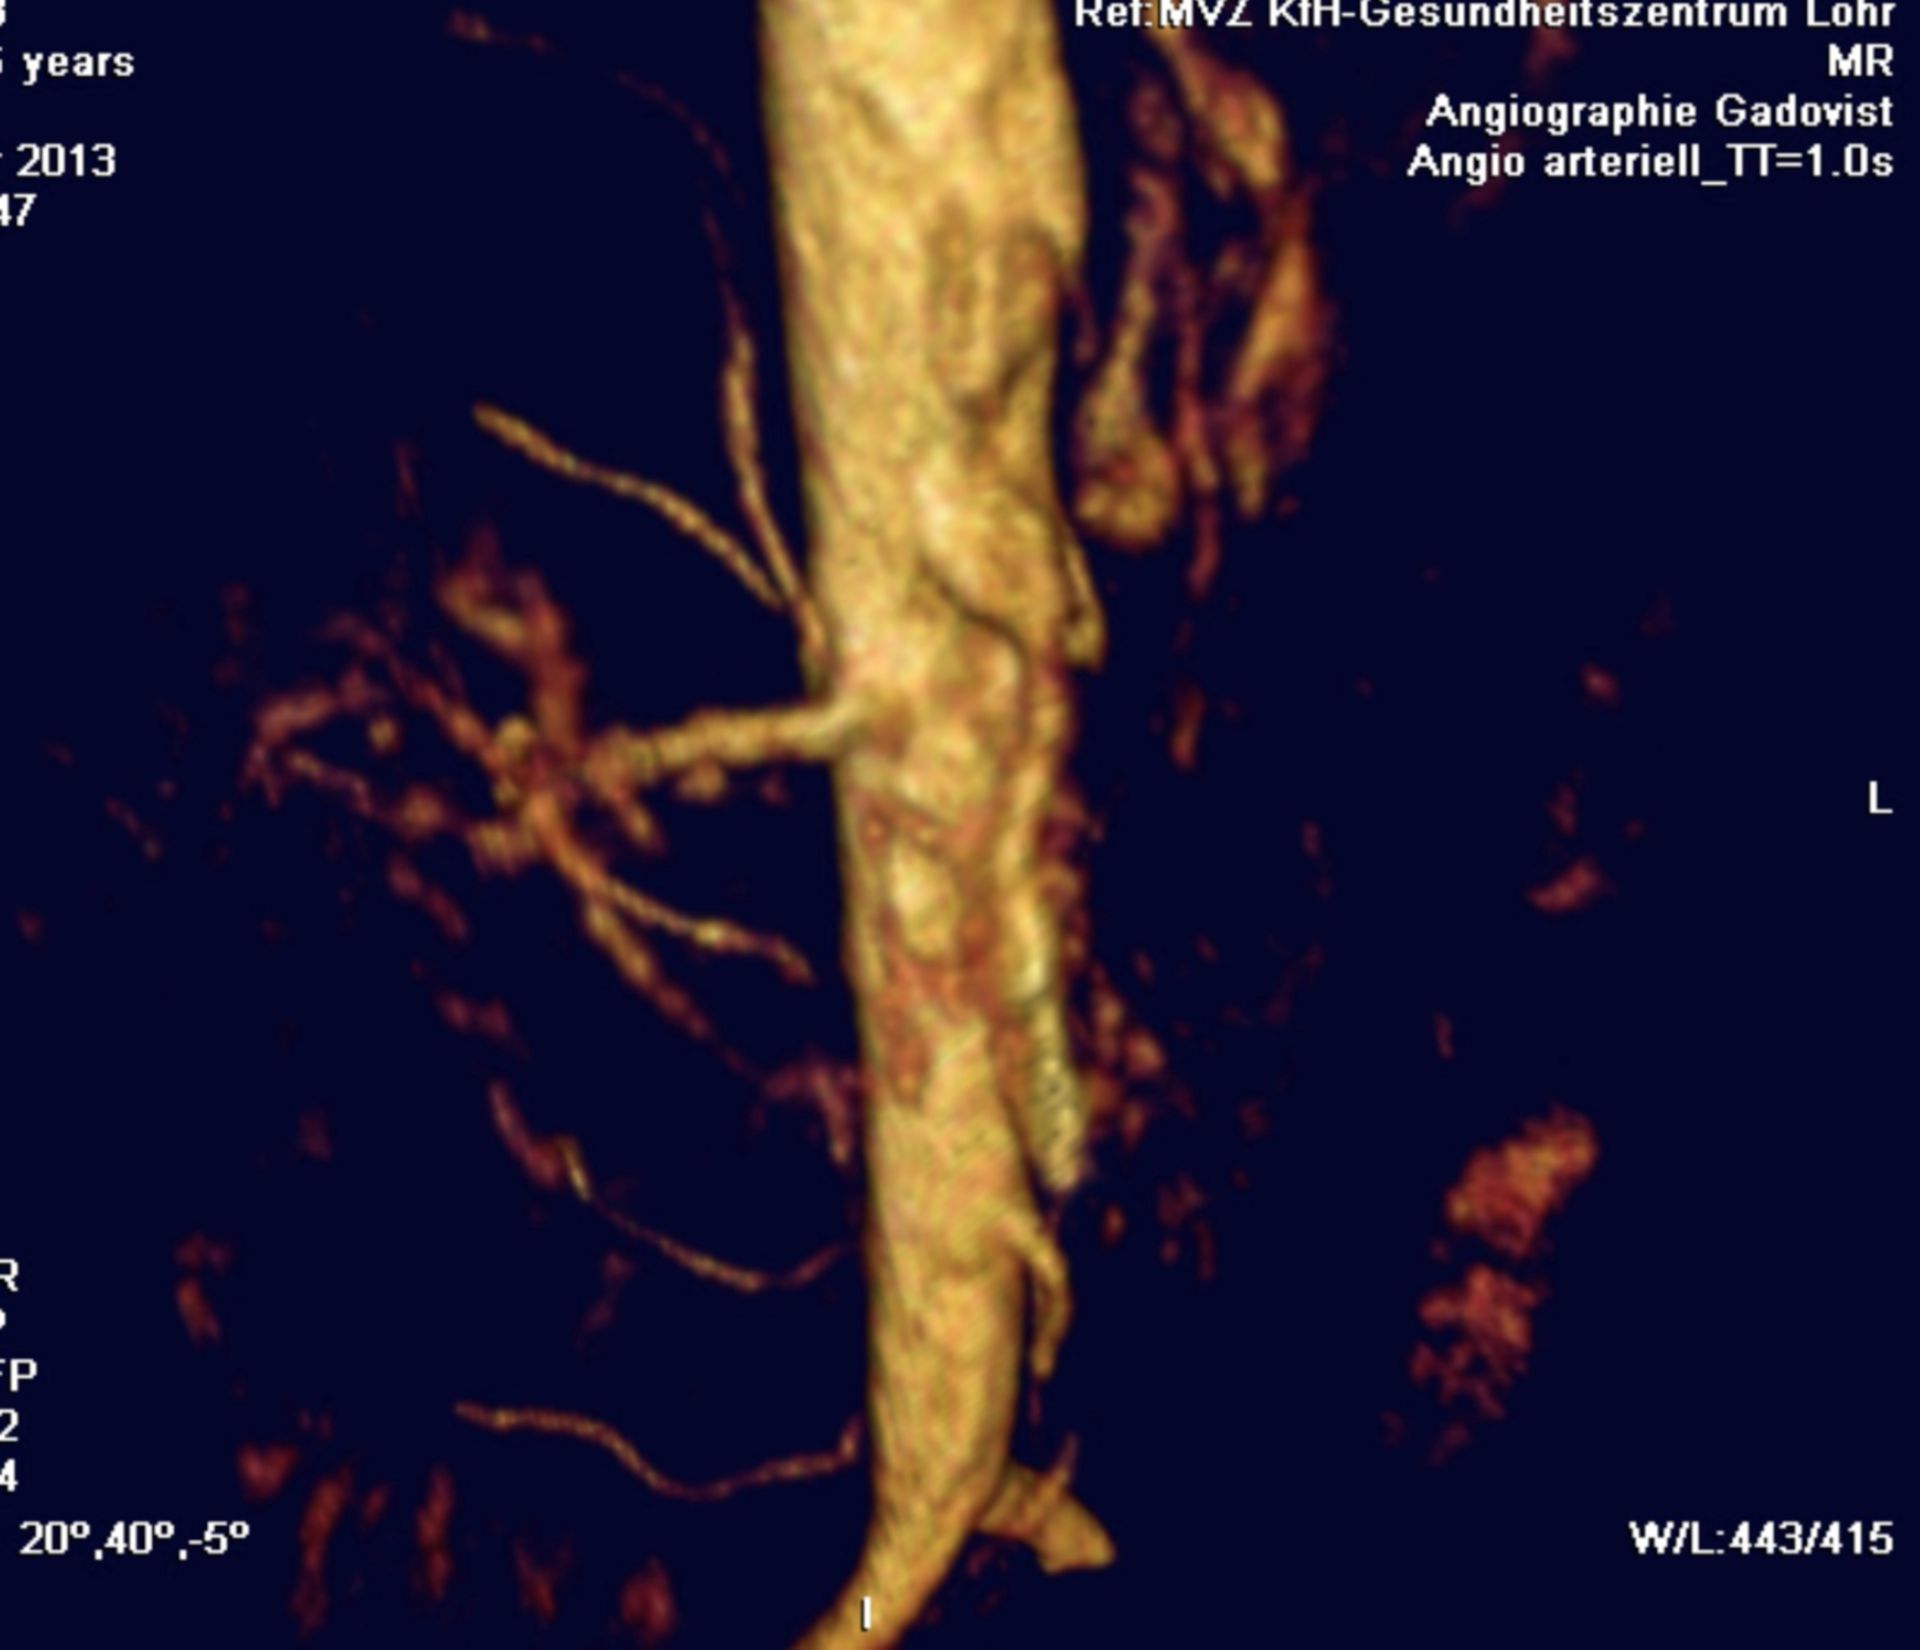 Angiographiebefund mit Kompression des Truncus coeliacus